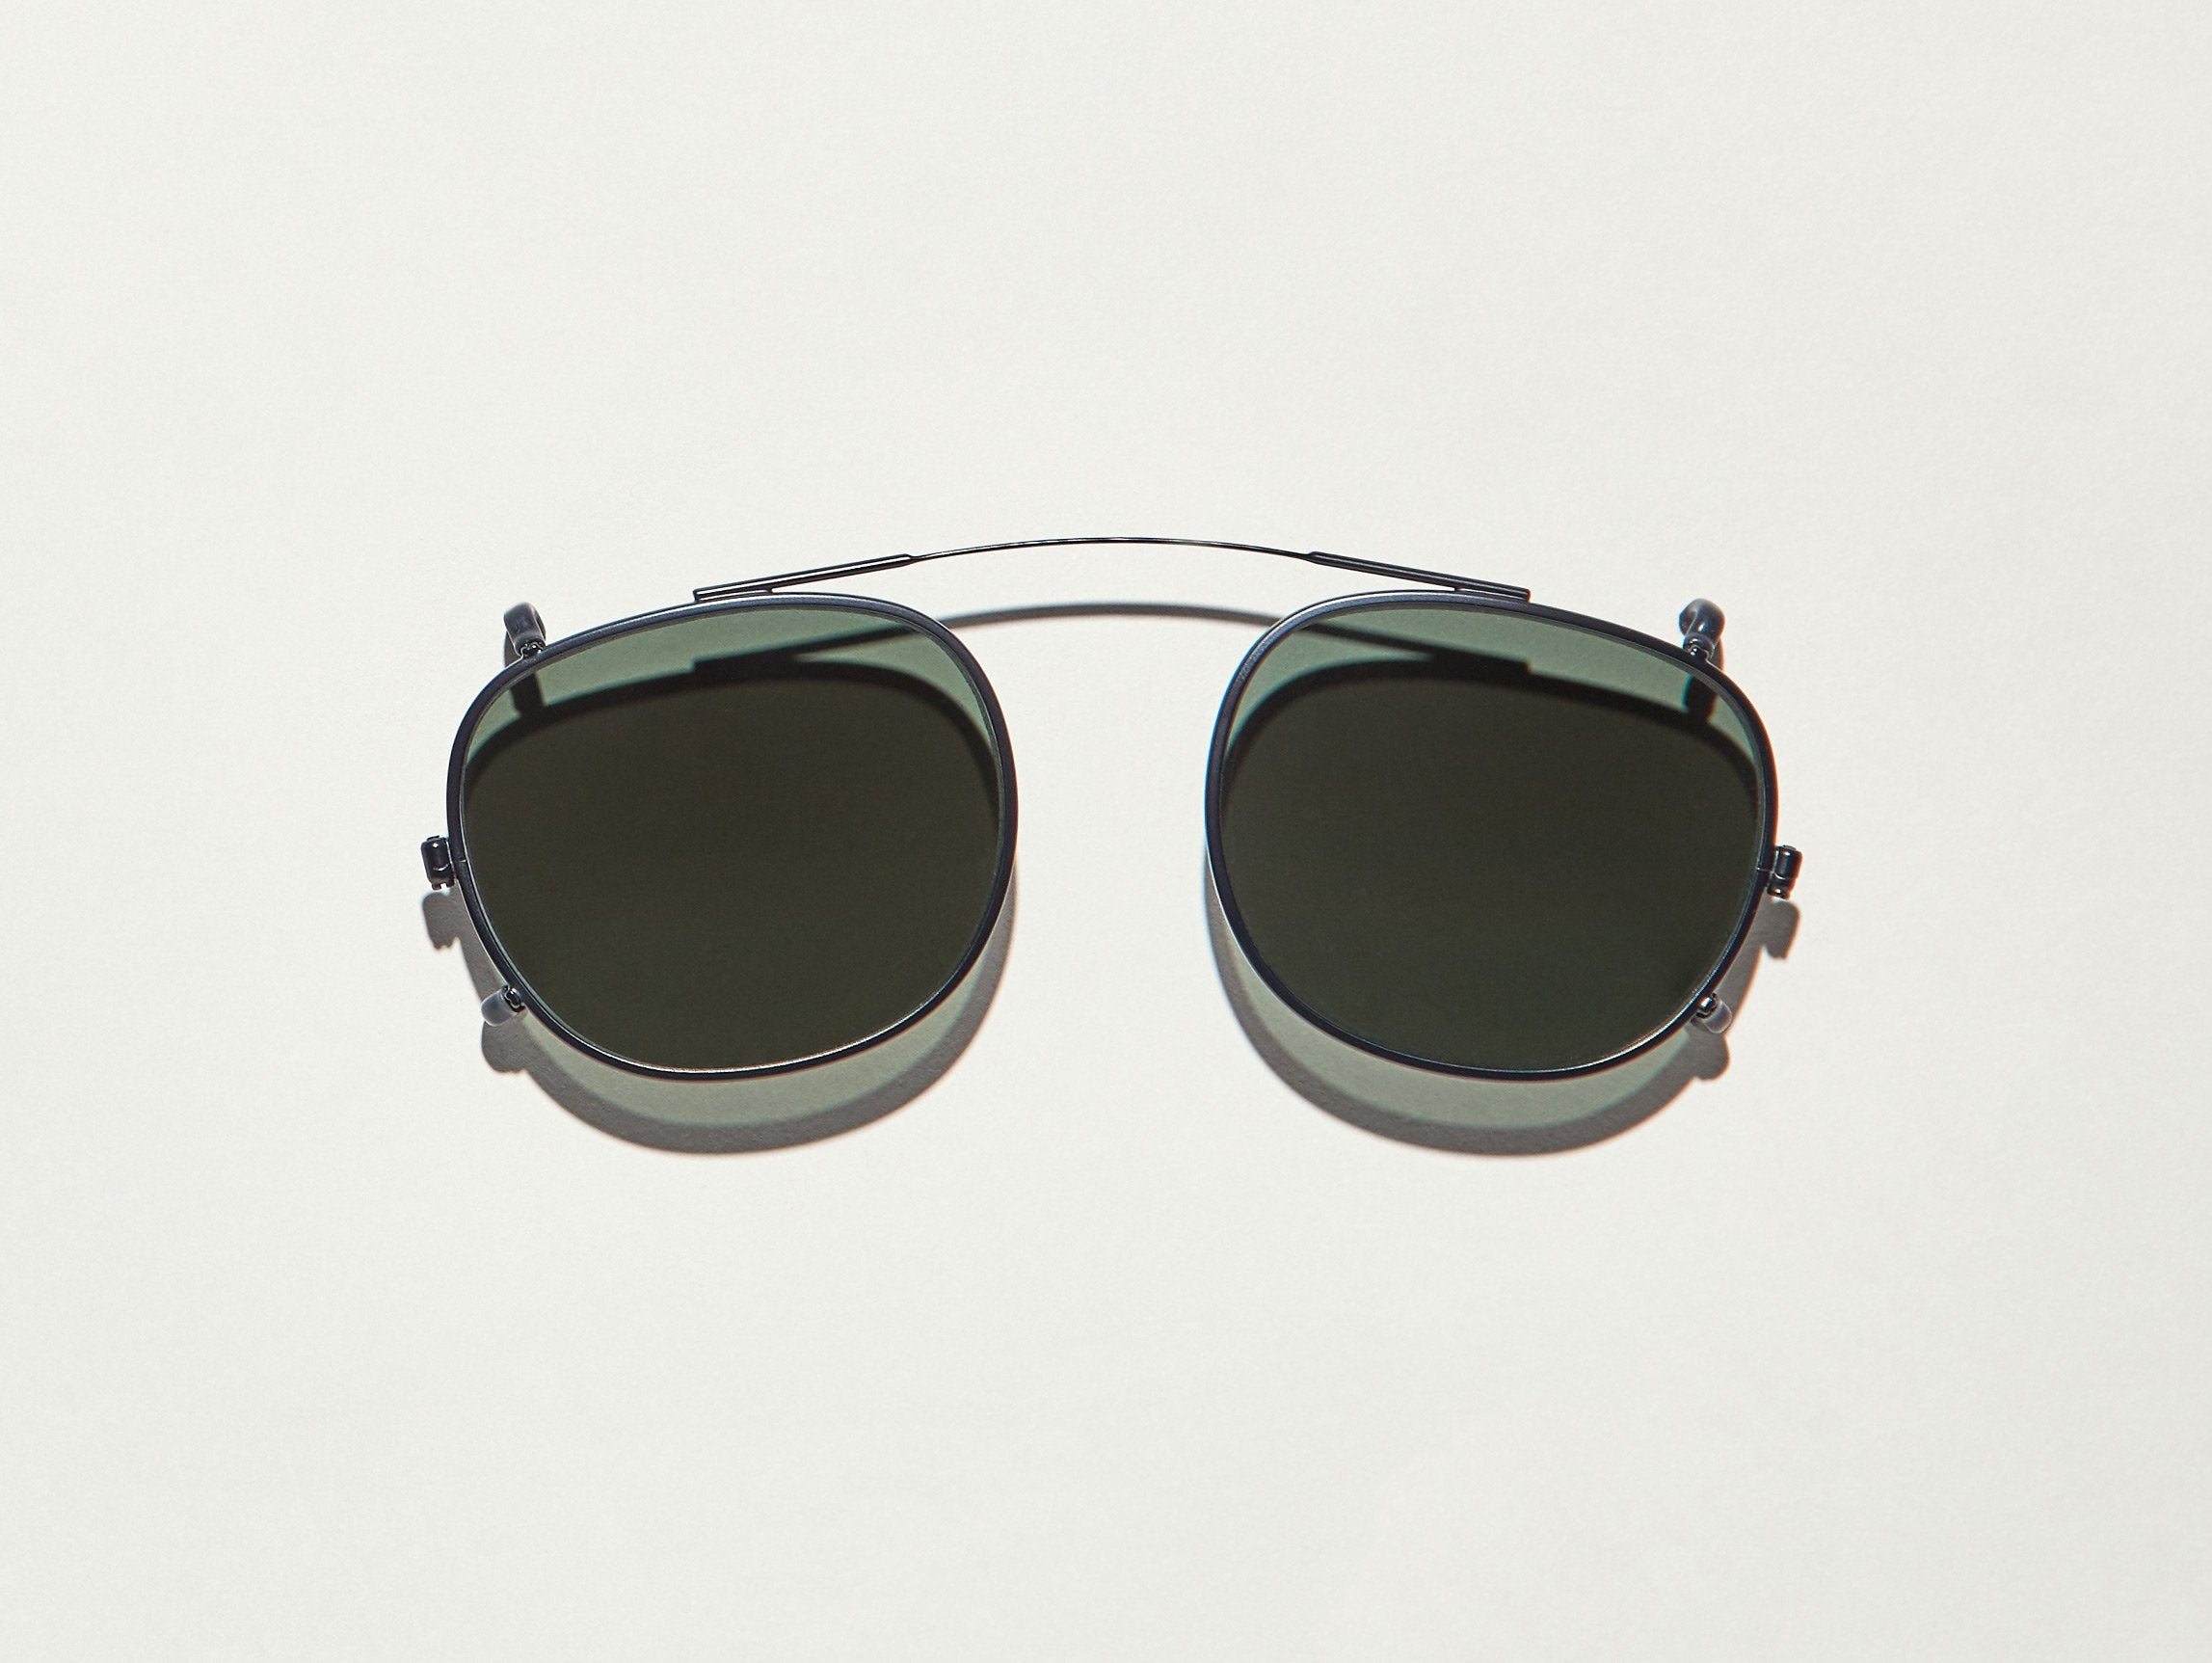 CLIPTOSH | Square Clip-on Sunglasses | United States